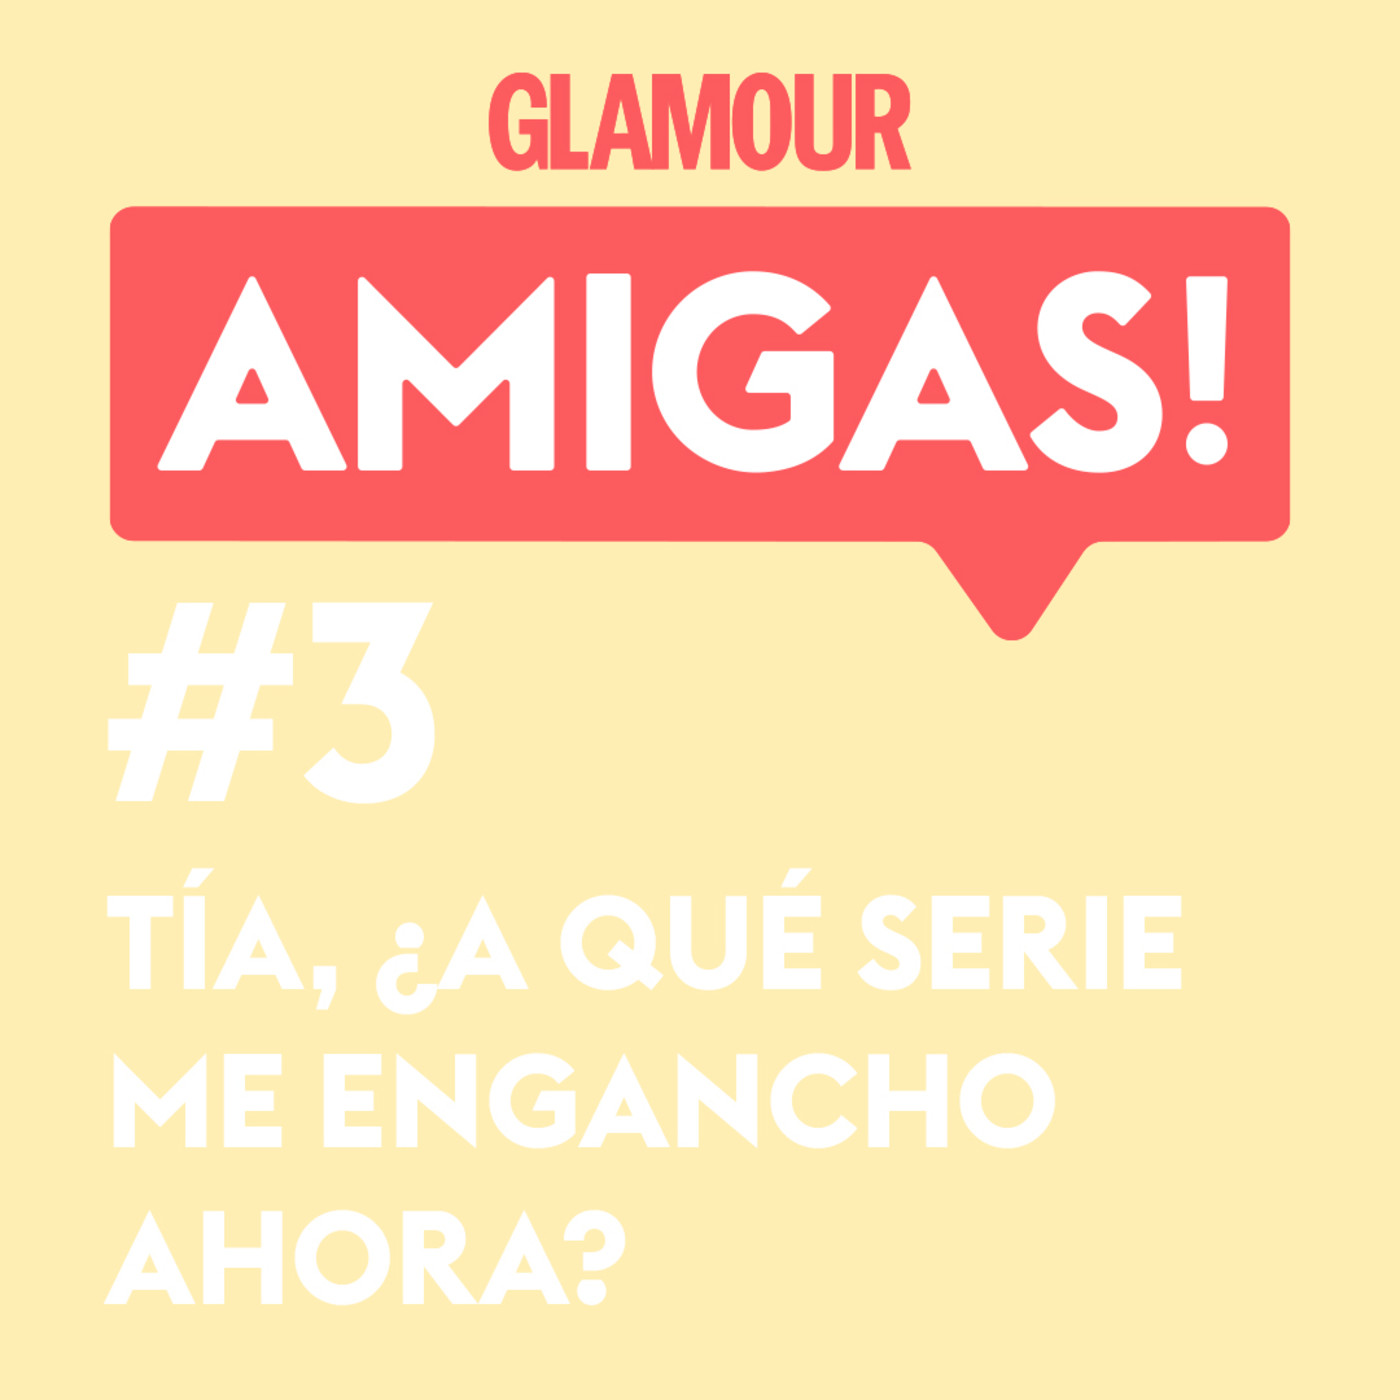 Glamour Amigas! #3: En un mundo post-Juego de Tronos, ¿a qué me engancho ahora? Con Paloma Rando.